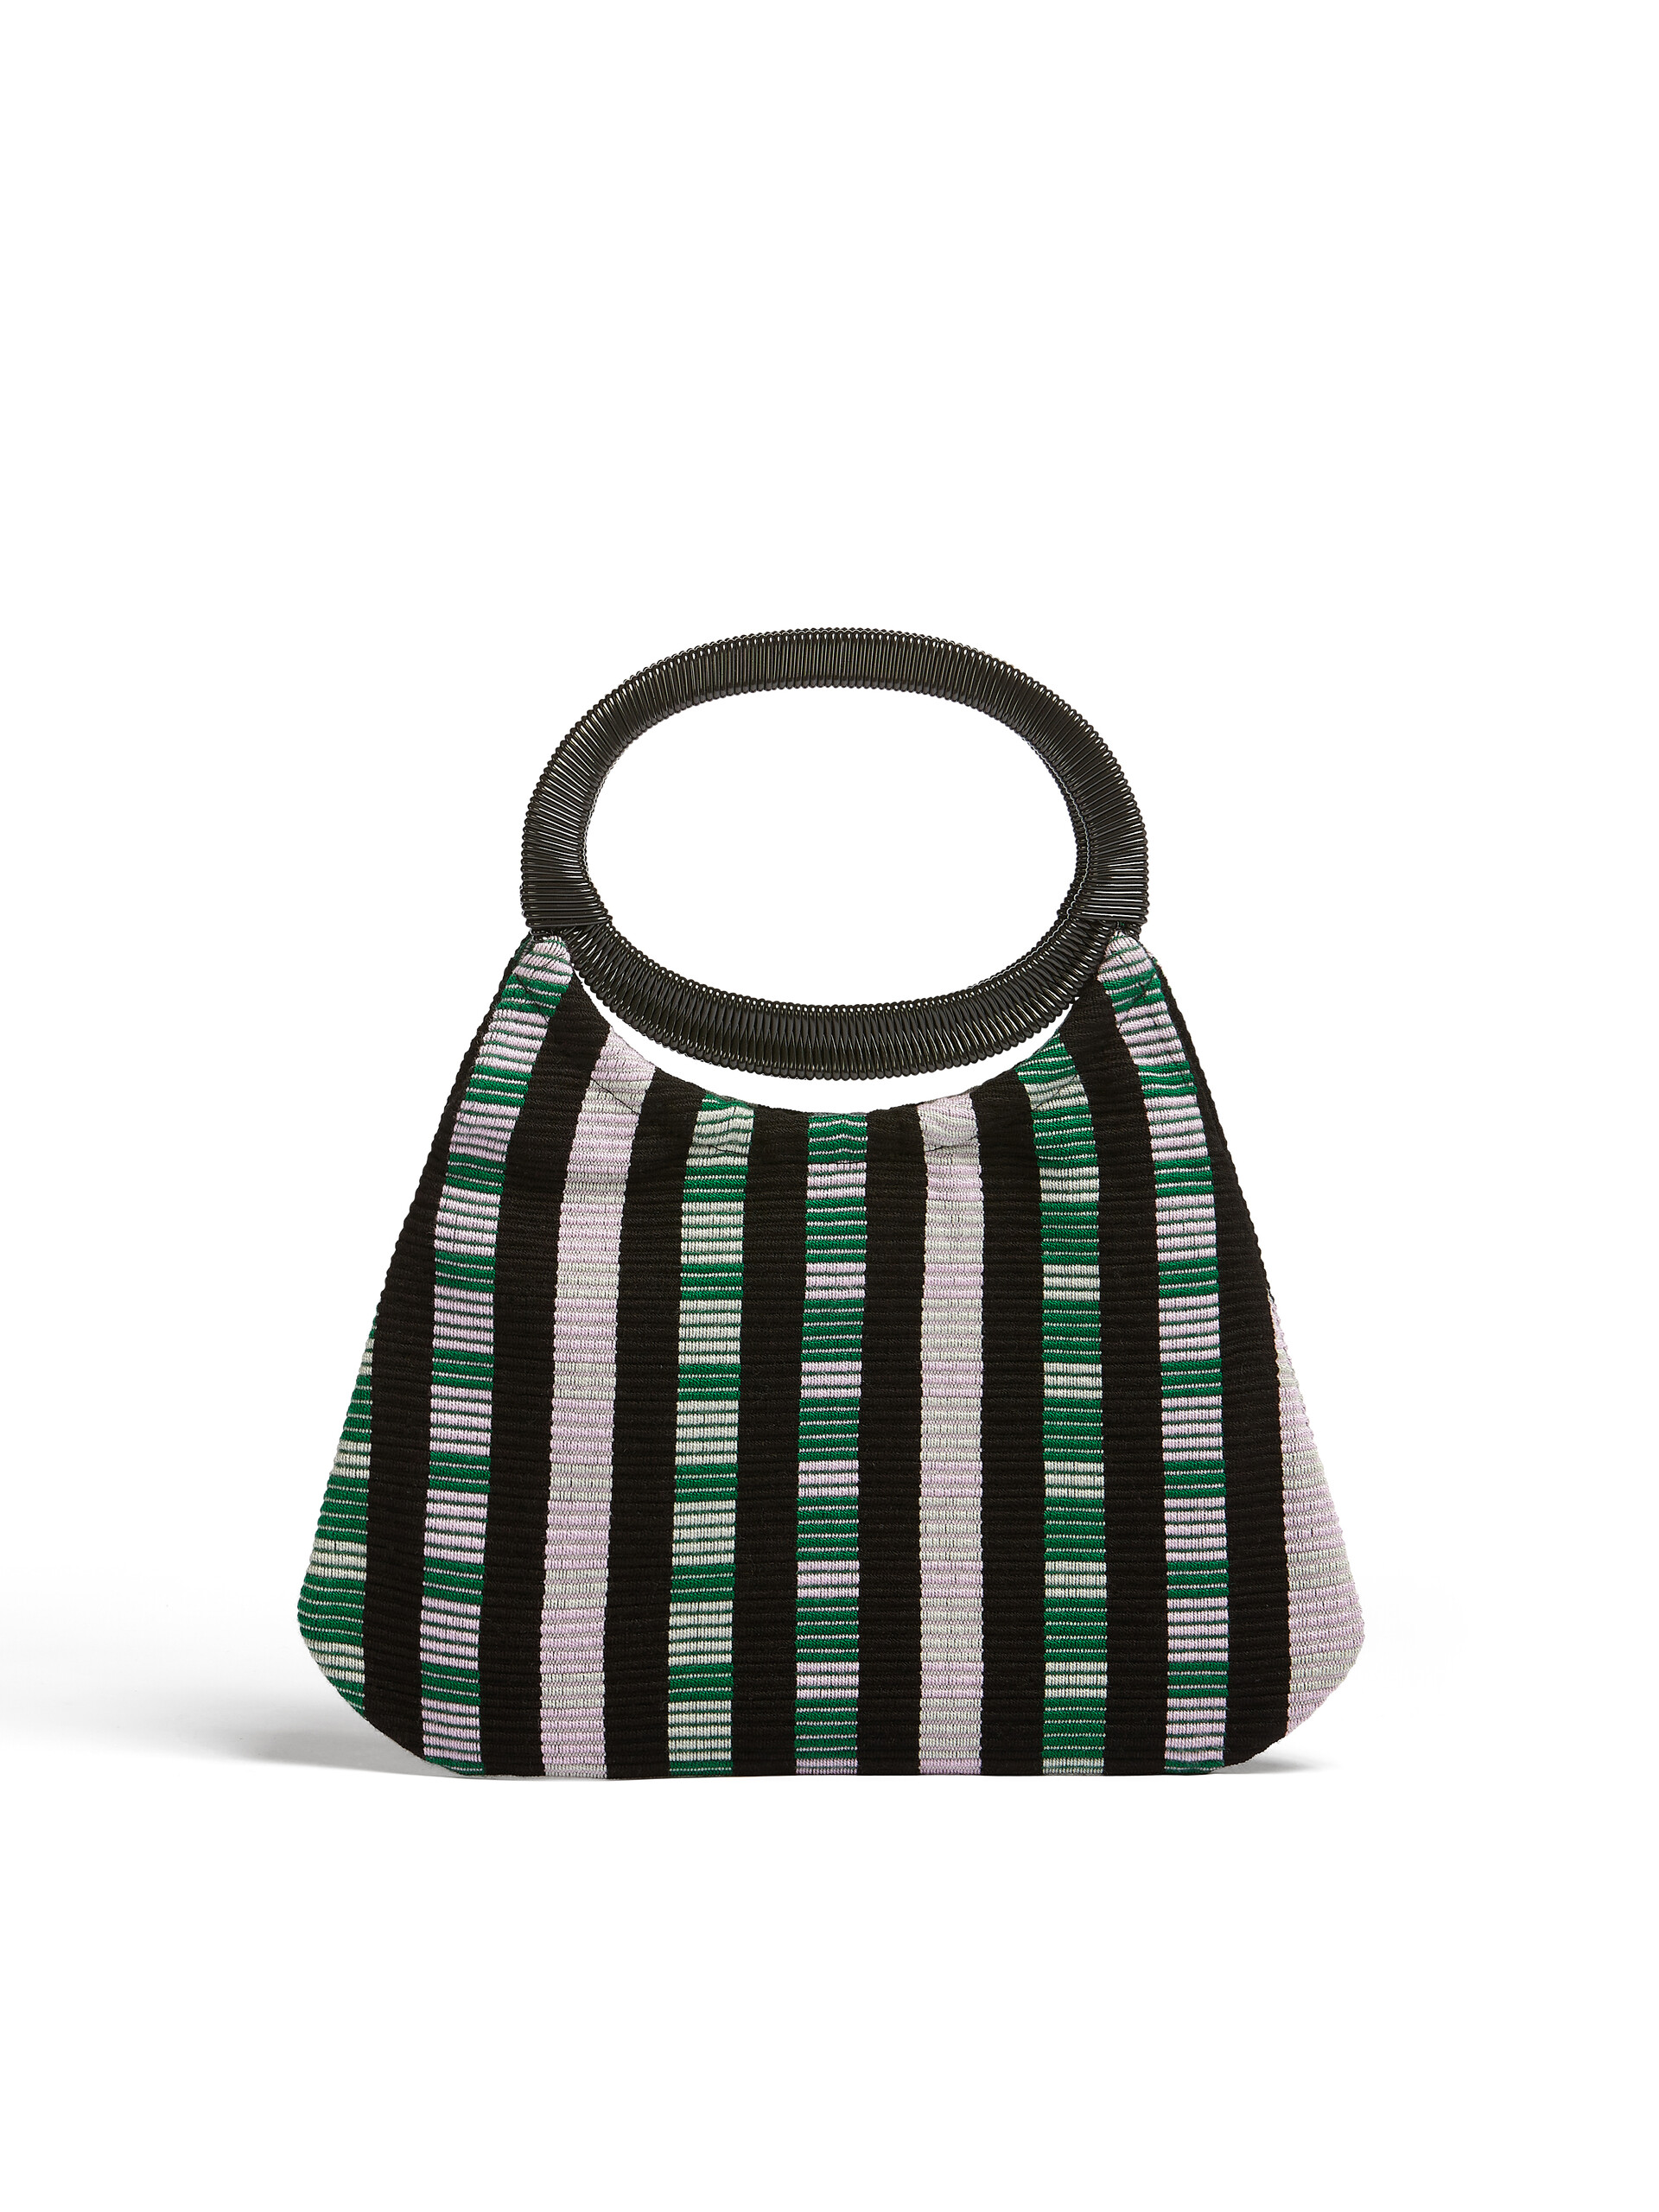 MARNI MARKET bag in multicolor striped cotton | Marni